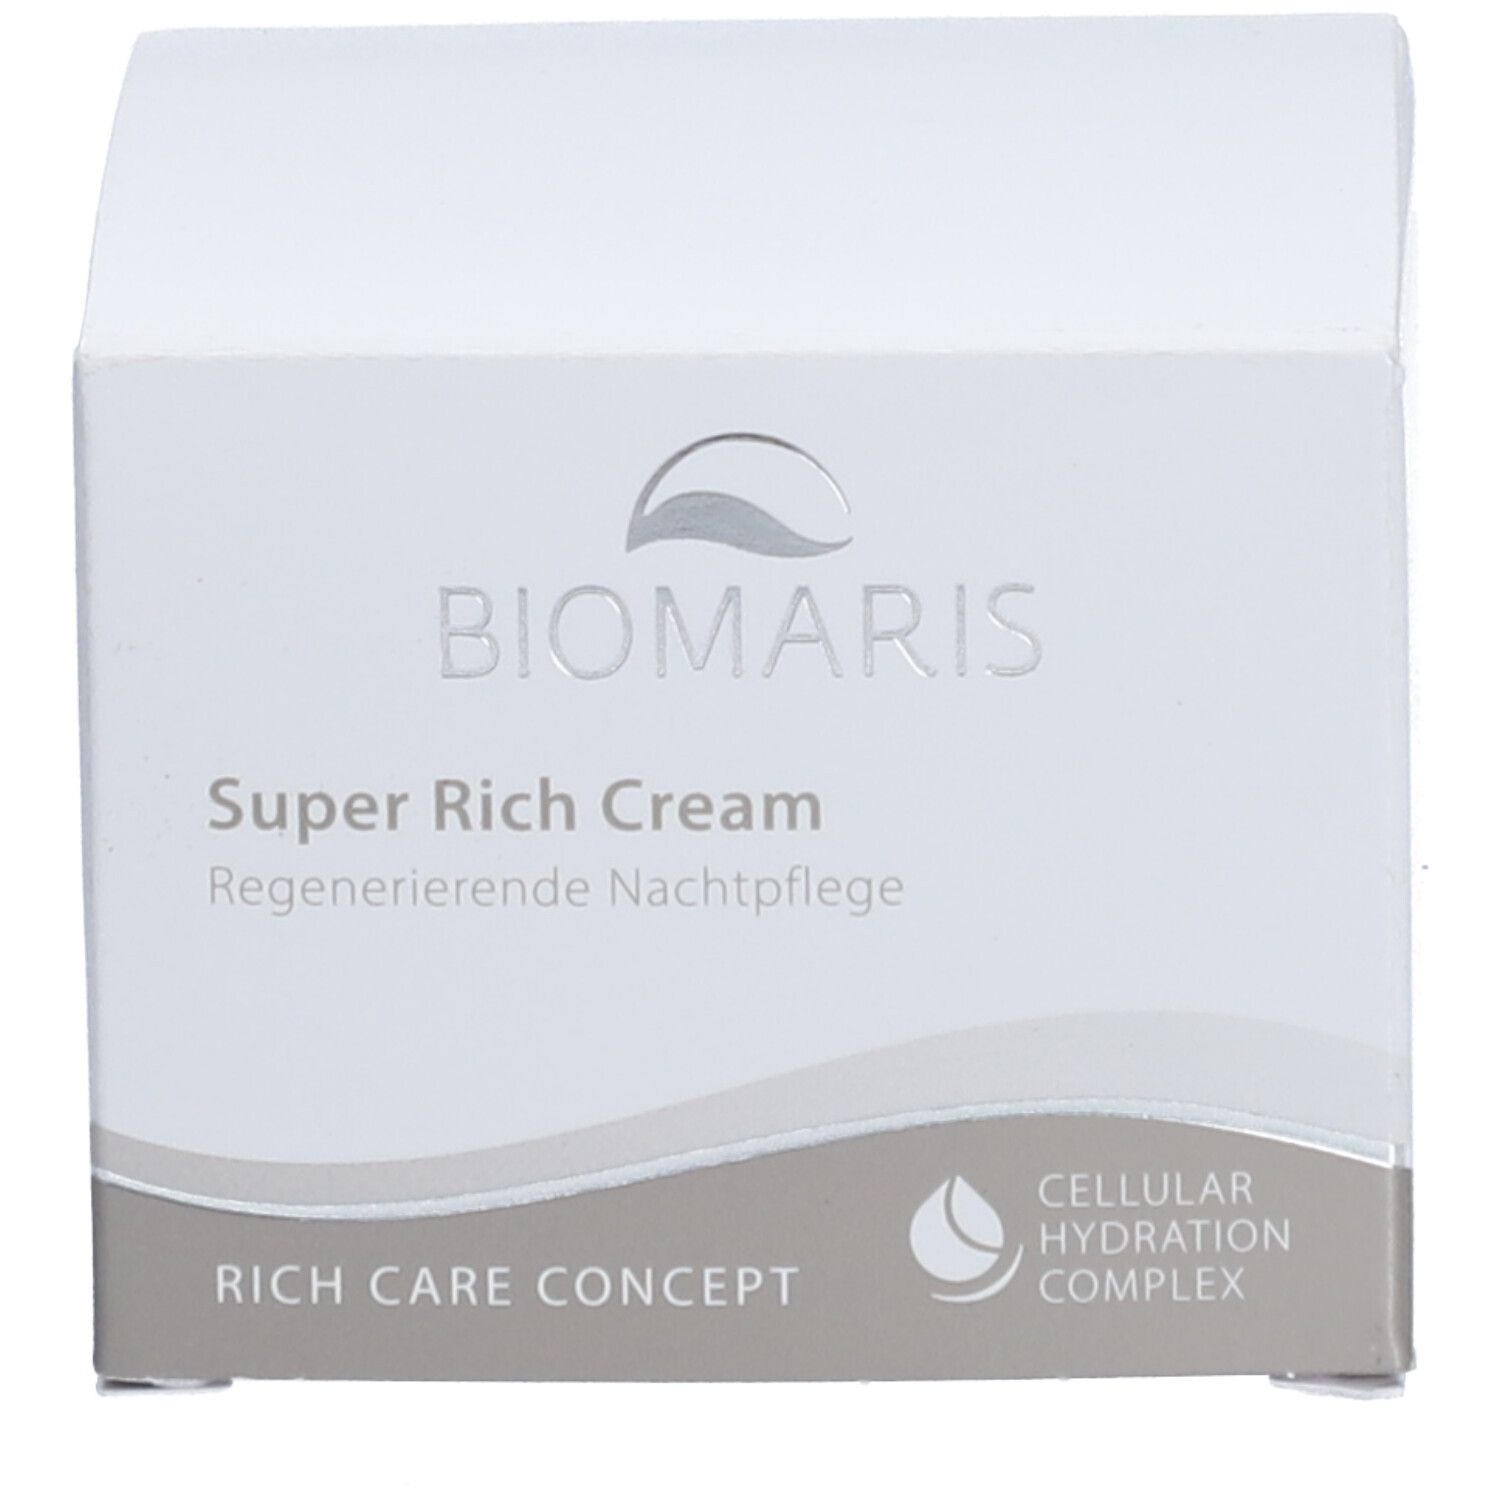 BIOMARIS® Super Rich Cream